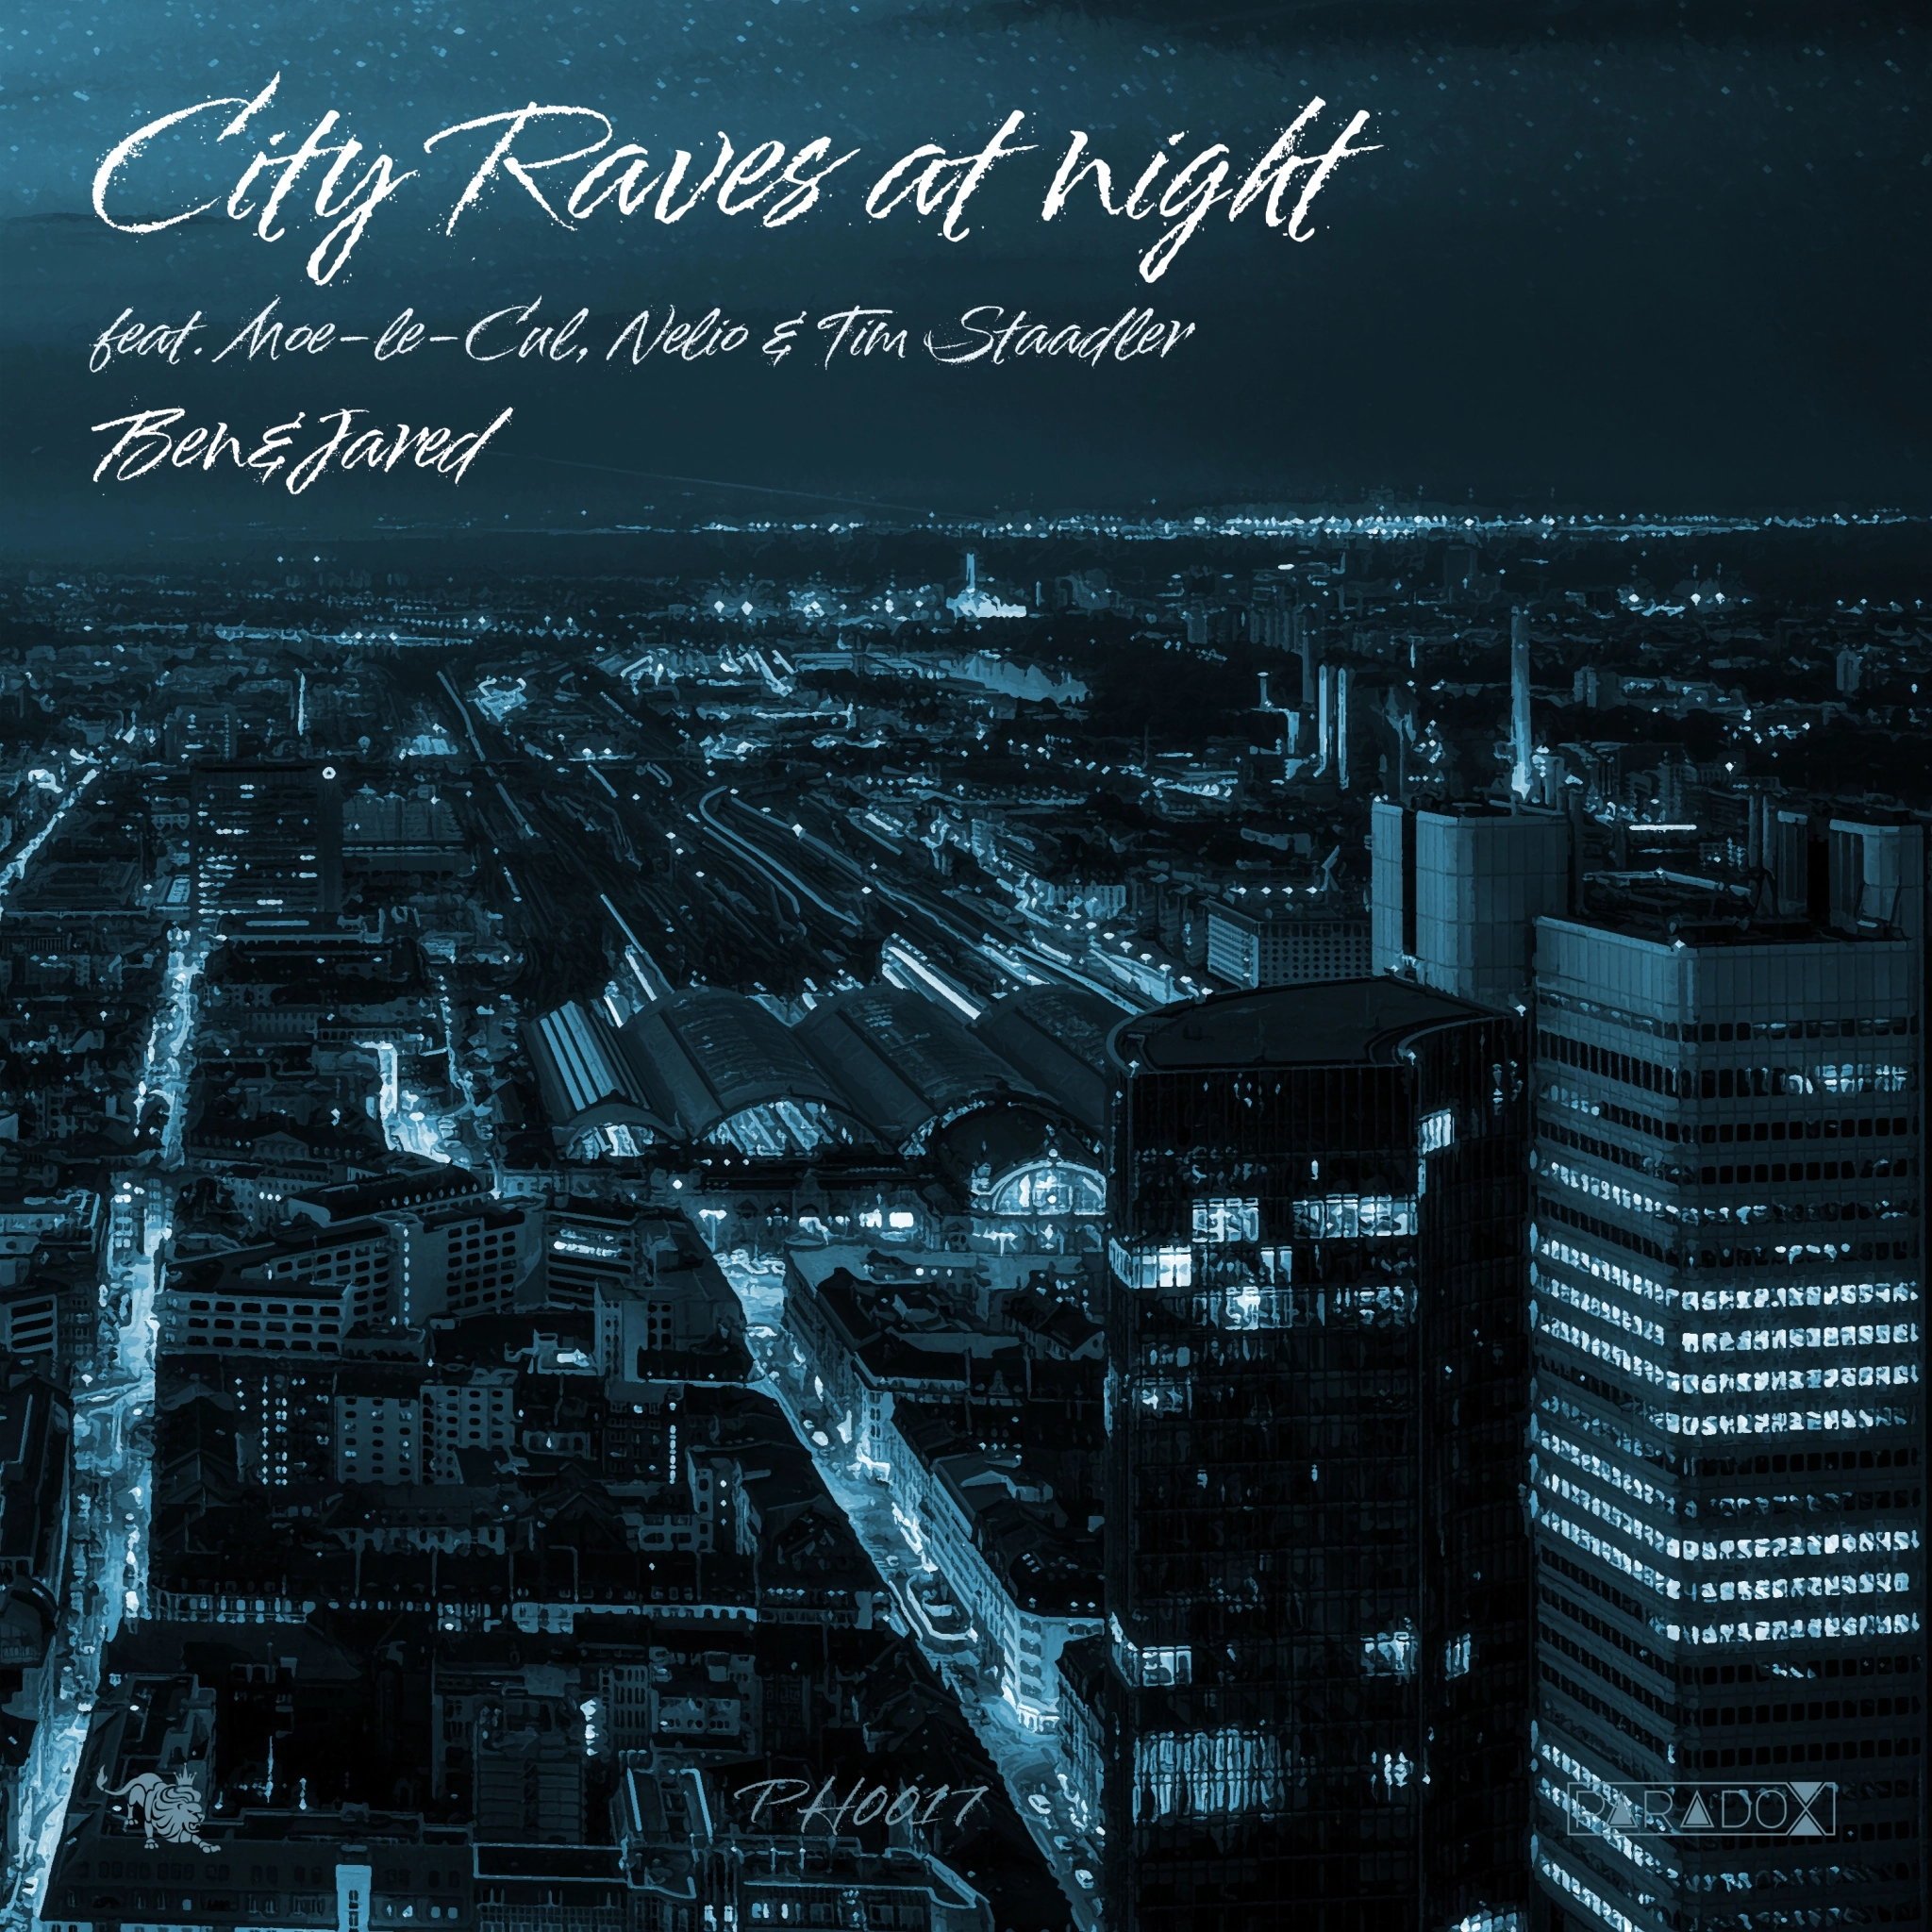 Advertising: Ben&Jared - City Raves at night